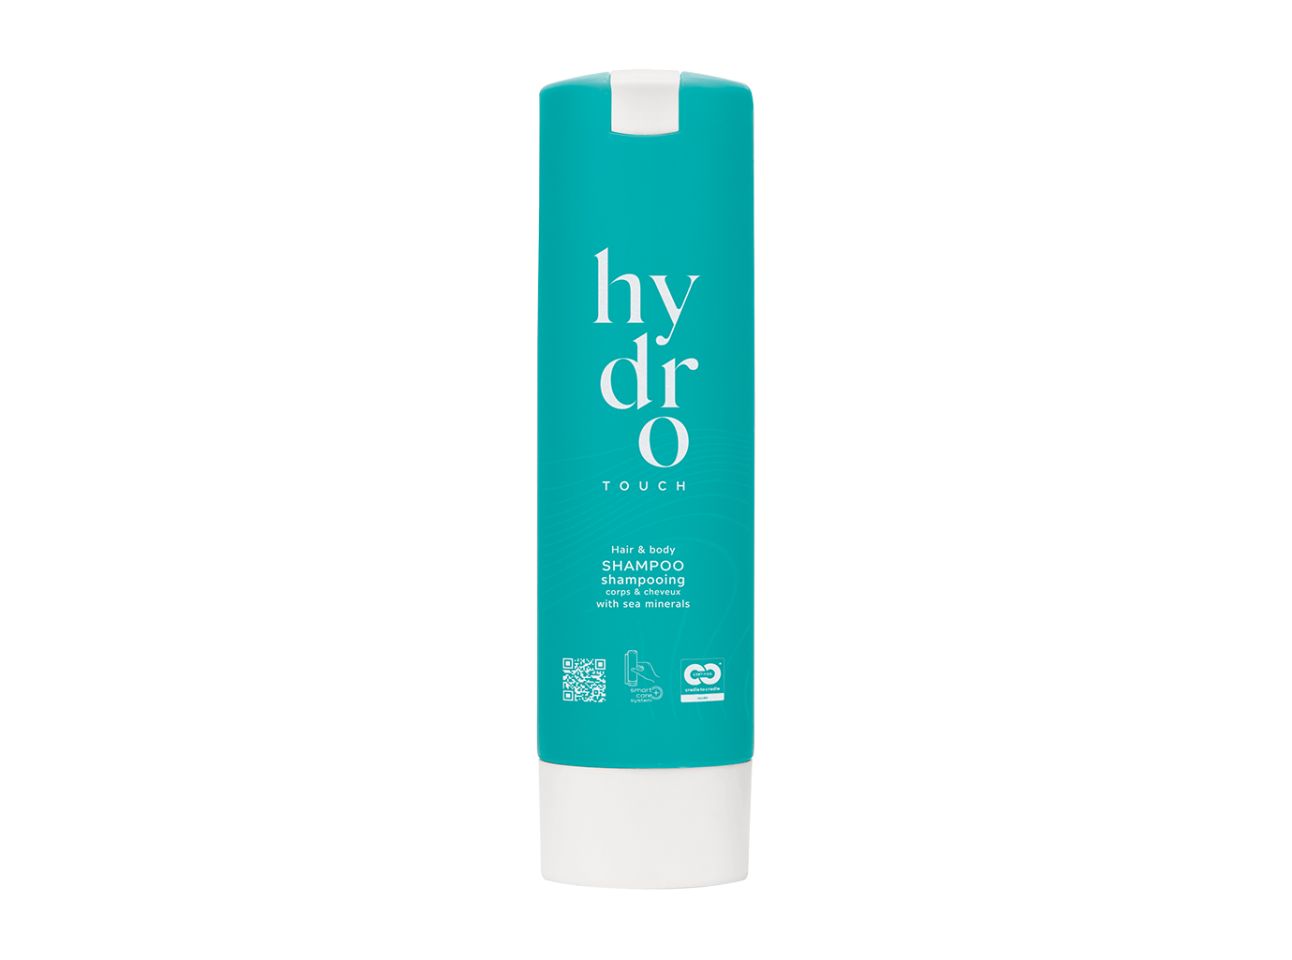 HYDRO TOUCH - Haar- und Bodyshampoo im Smart Care Spender, 300 ml